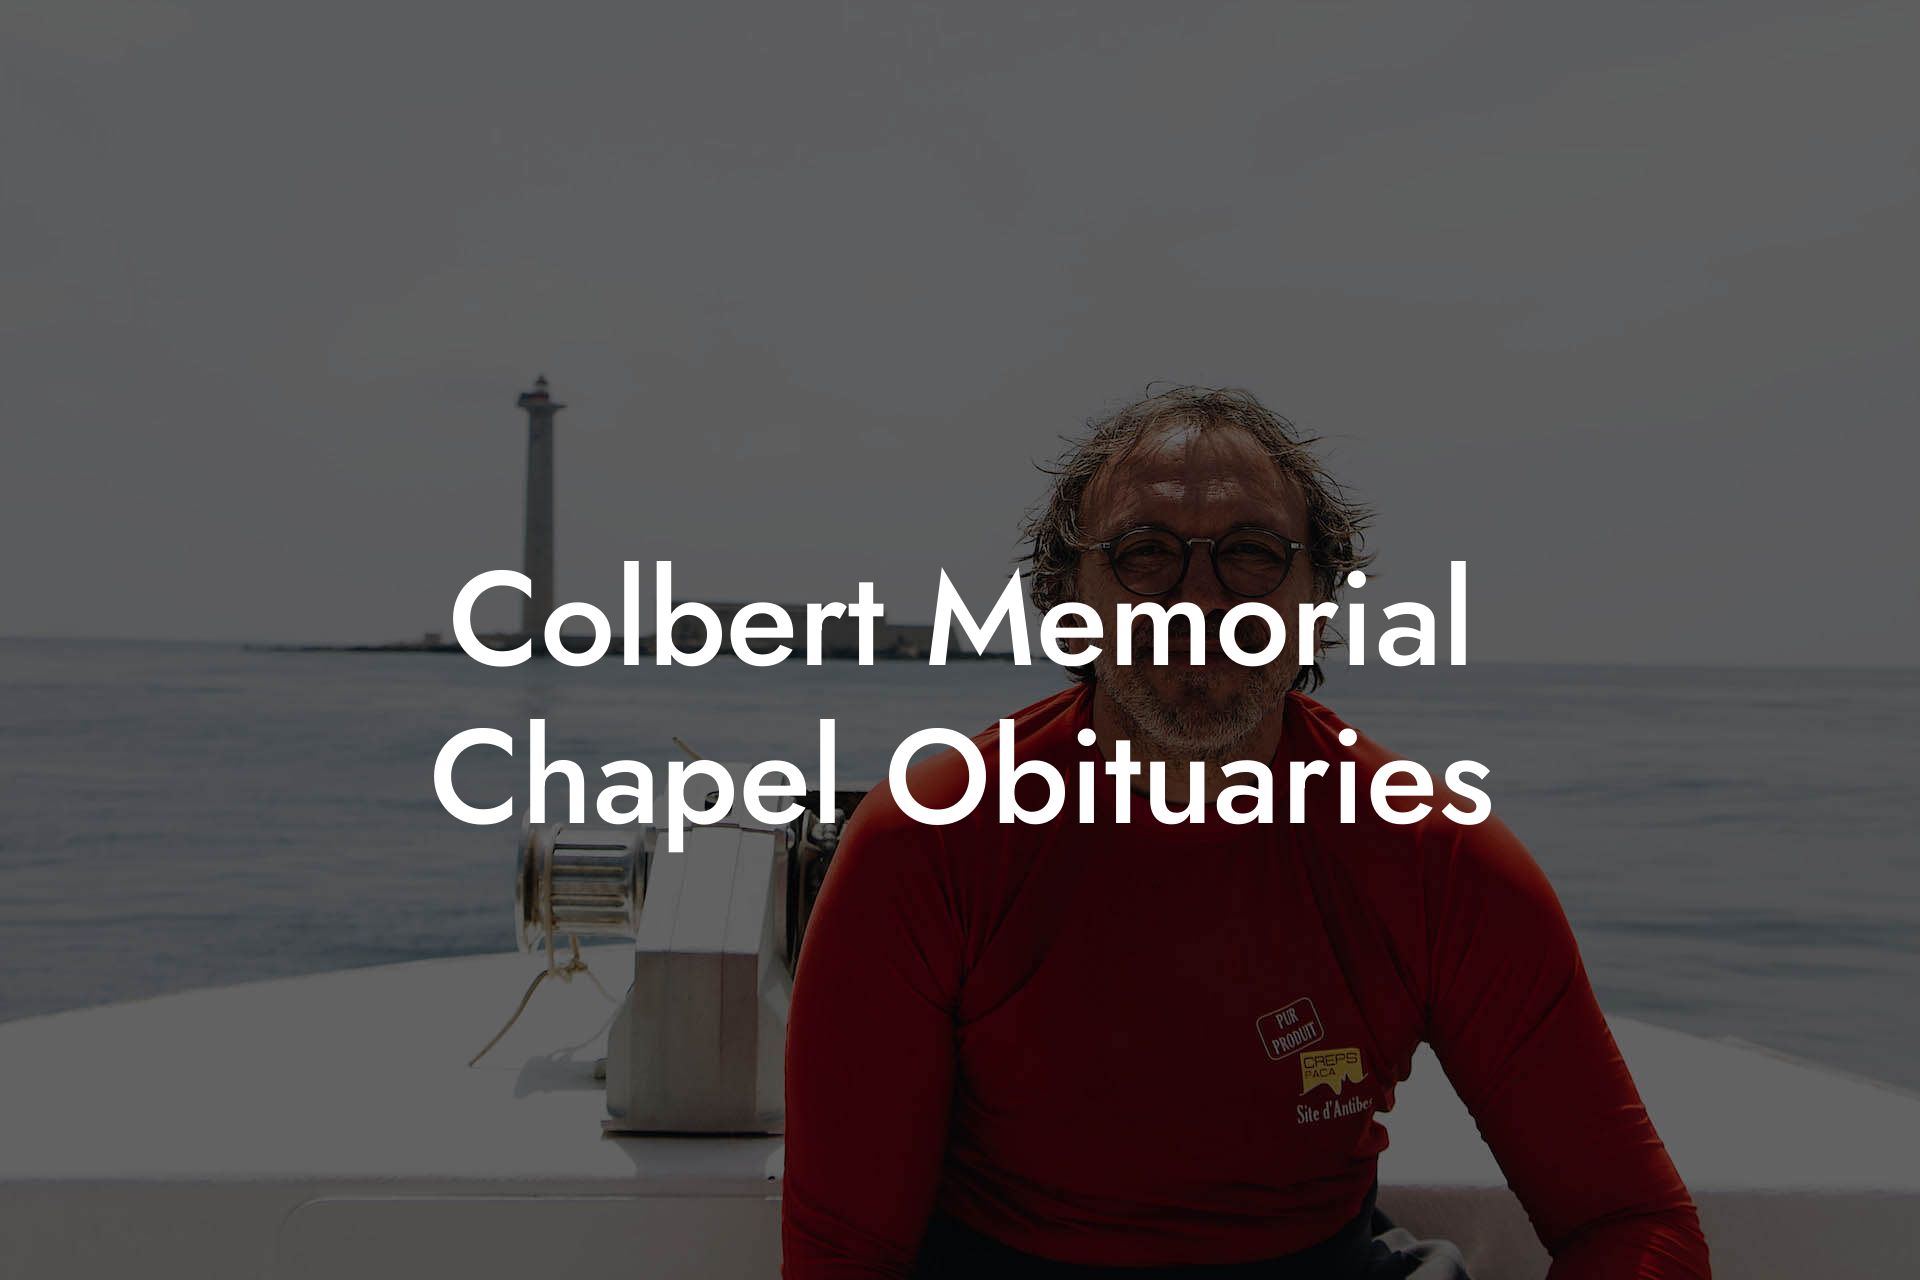 Colbert Memorial Chapel Obituaries